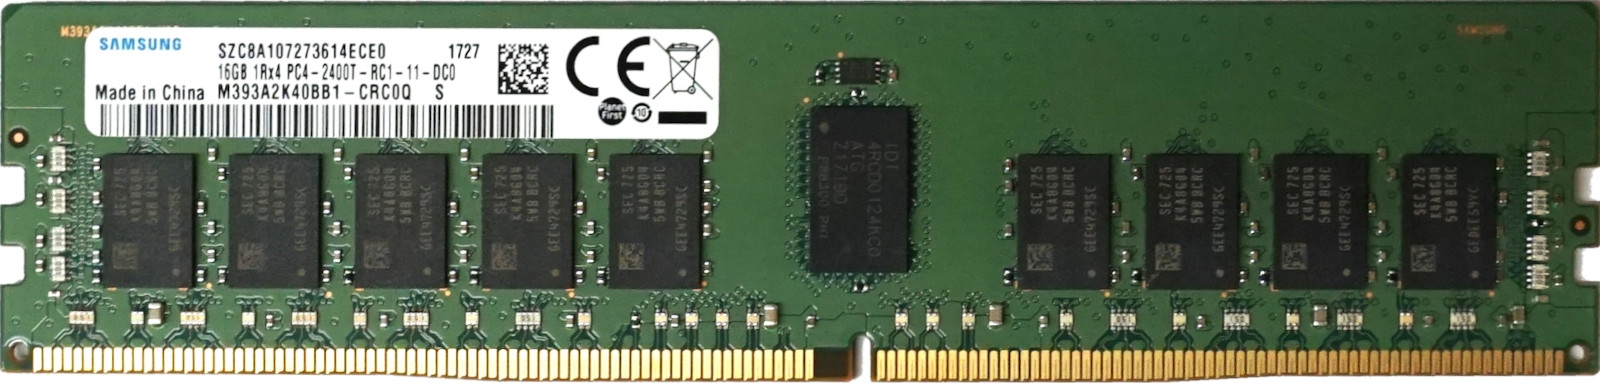 Samsung - 16GB PC4-19200T-R 2400T-R 1RX4 DDR4-2400MHz ECC REG RAM